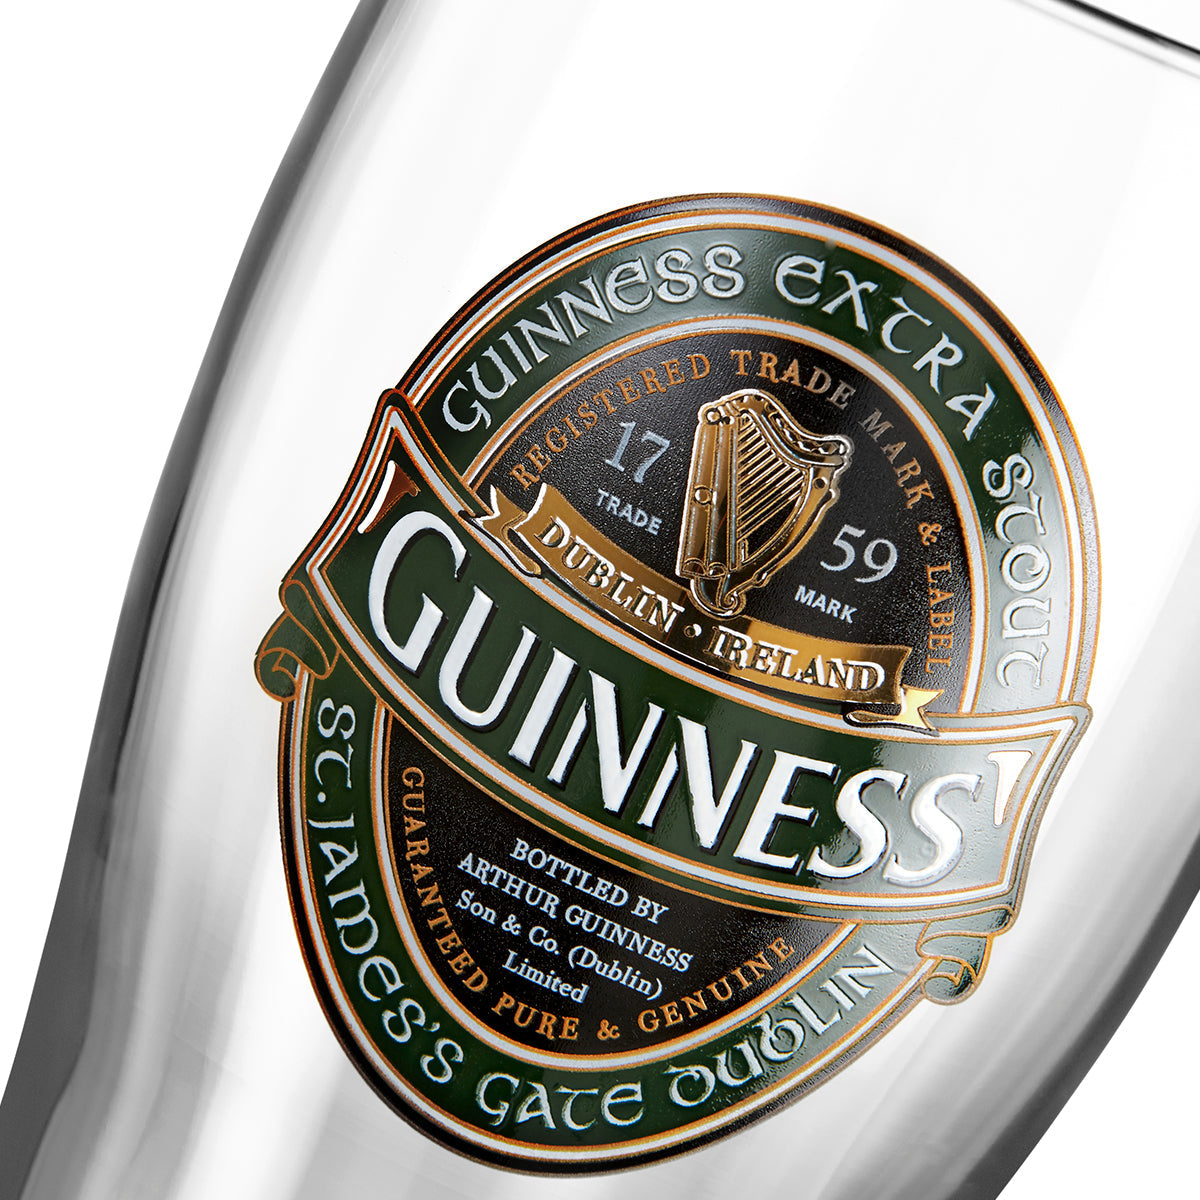 An Guinness UK Ireland Collection pint glass.